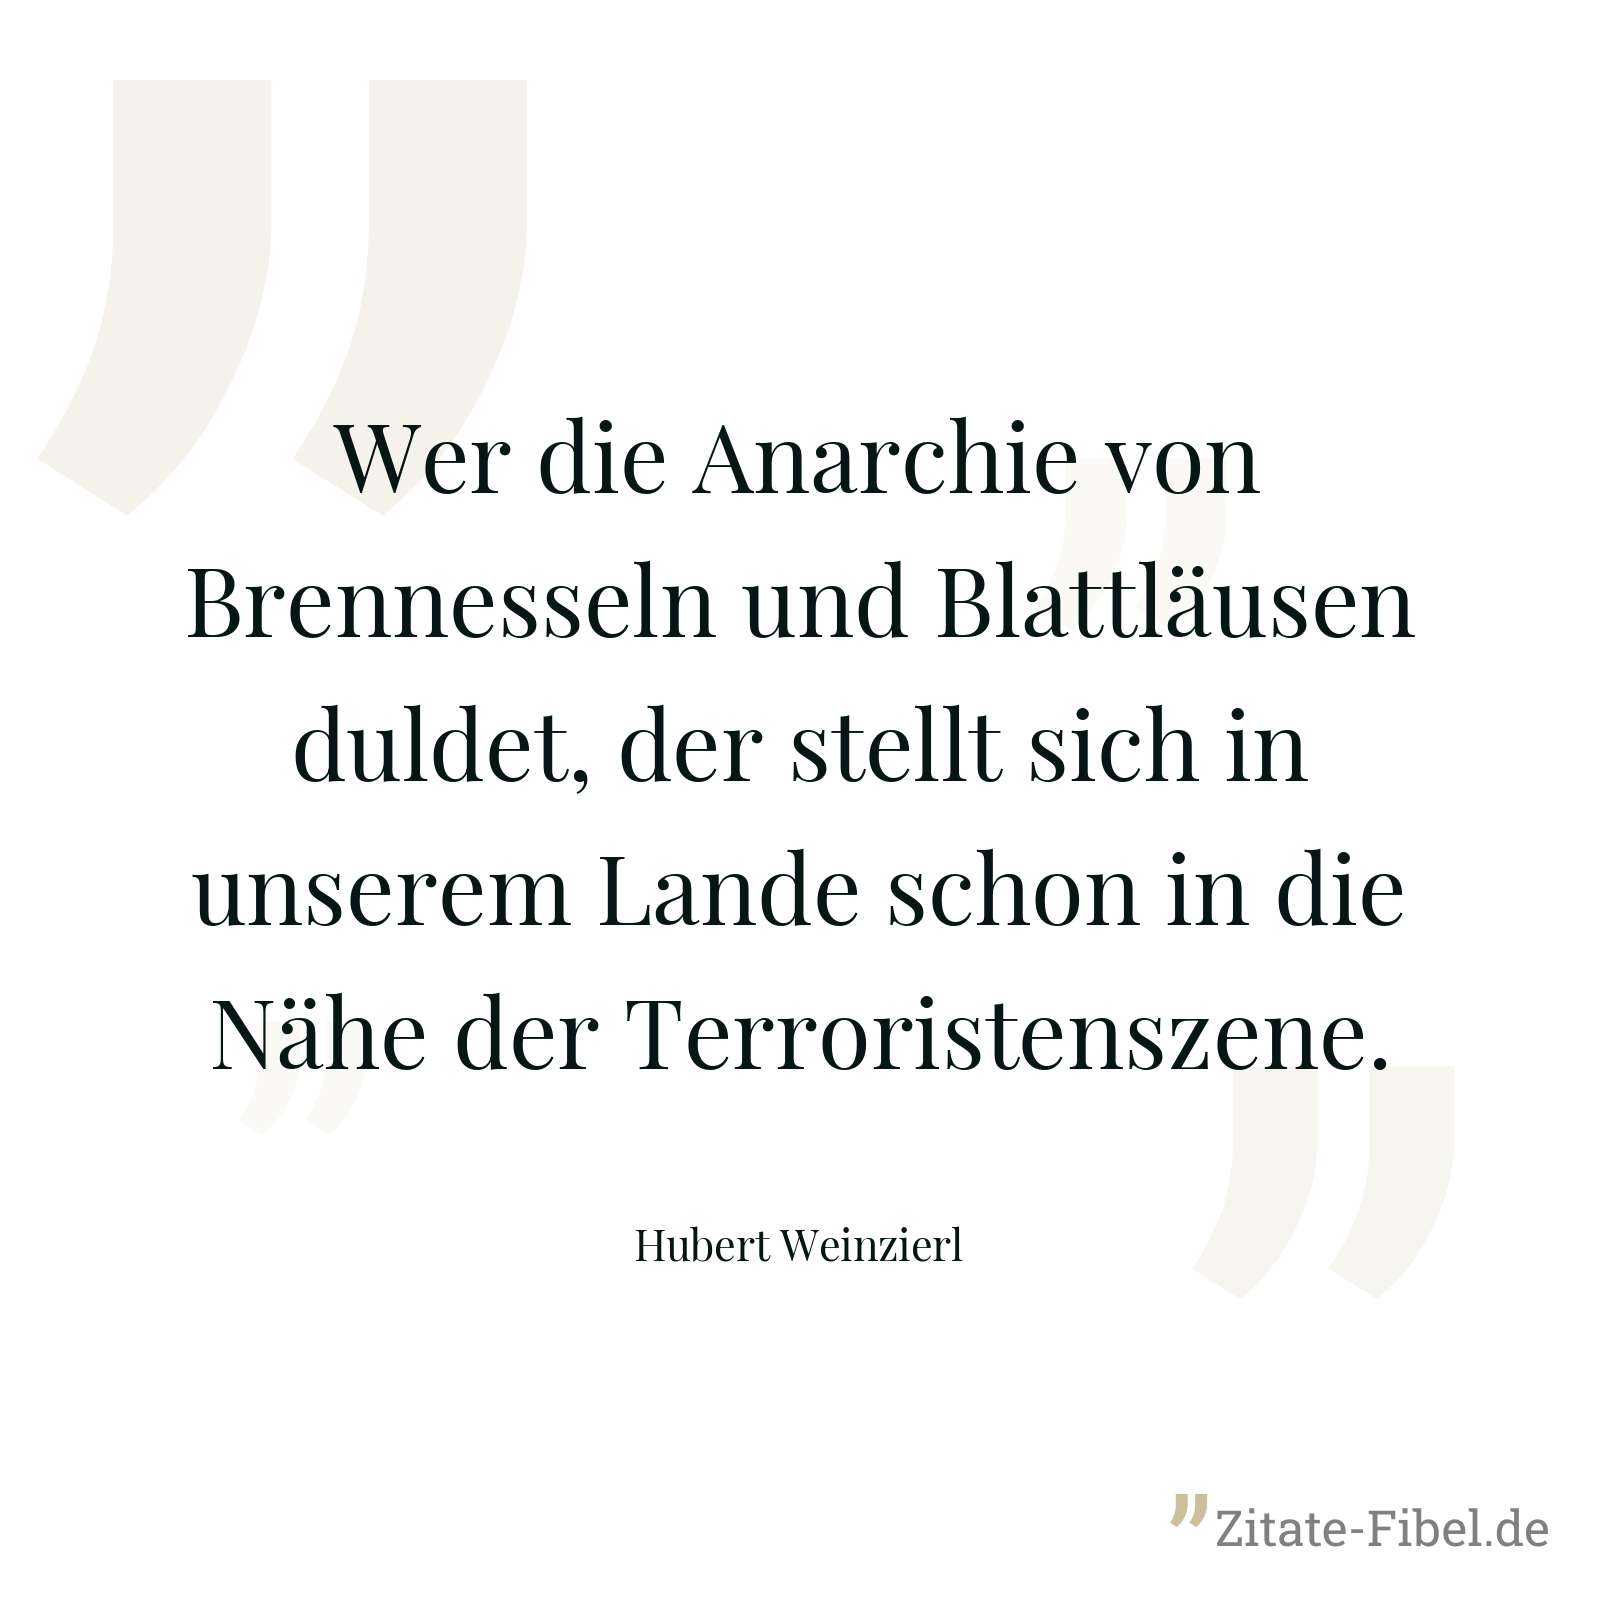 Wer die Anarchie von Brennesseln und Blattläusen duldet, der stellt sich in unserem Lande schon in die Nähe der Terroristenszene. - Hubert Weinzierl